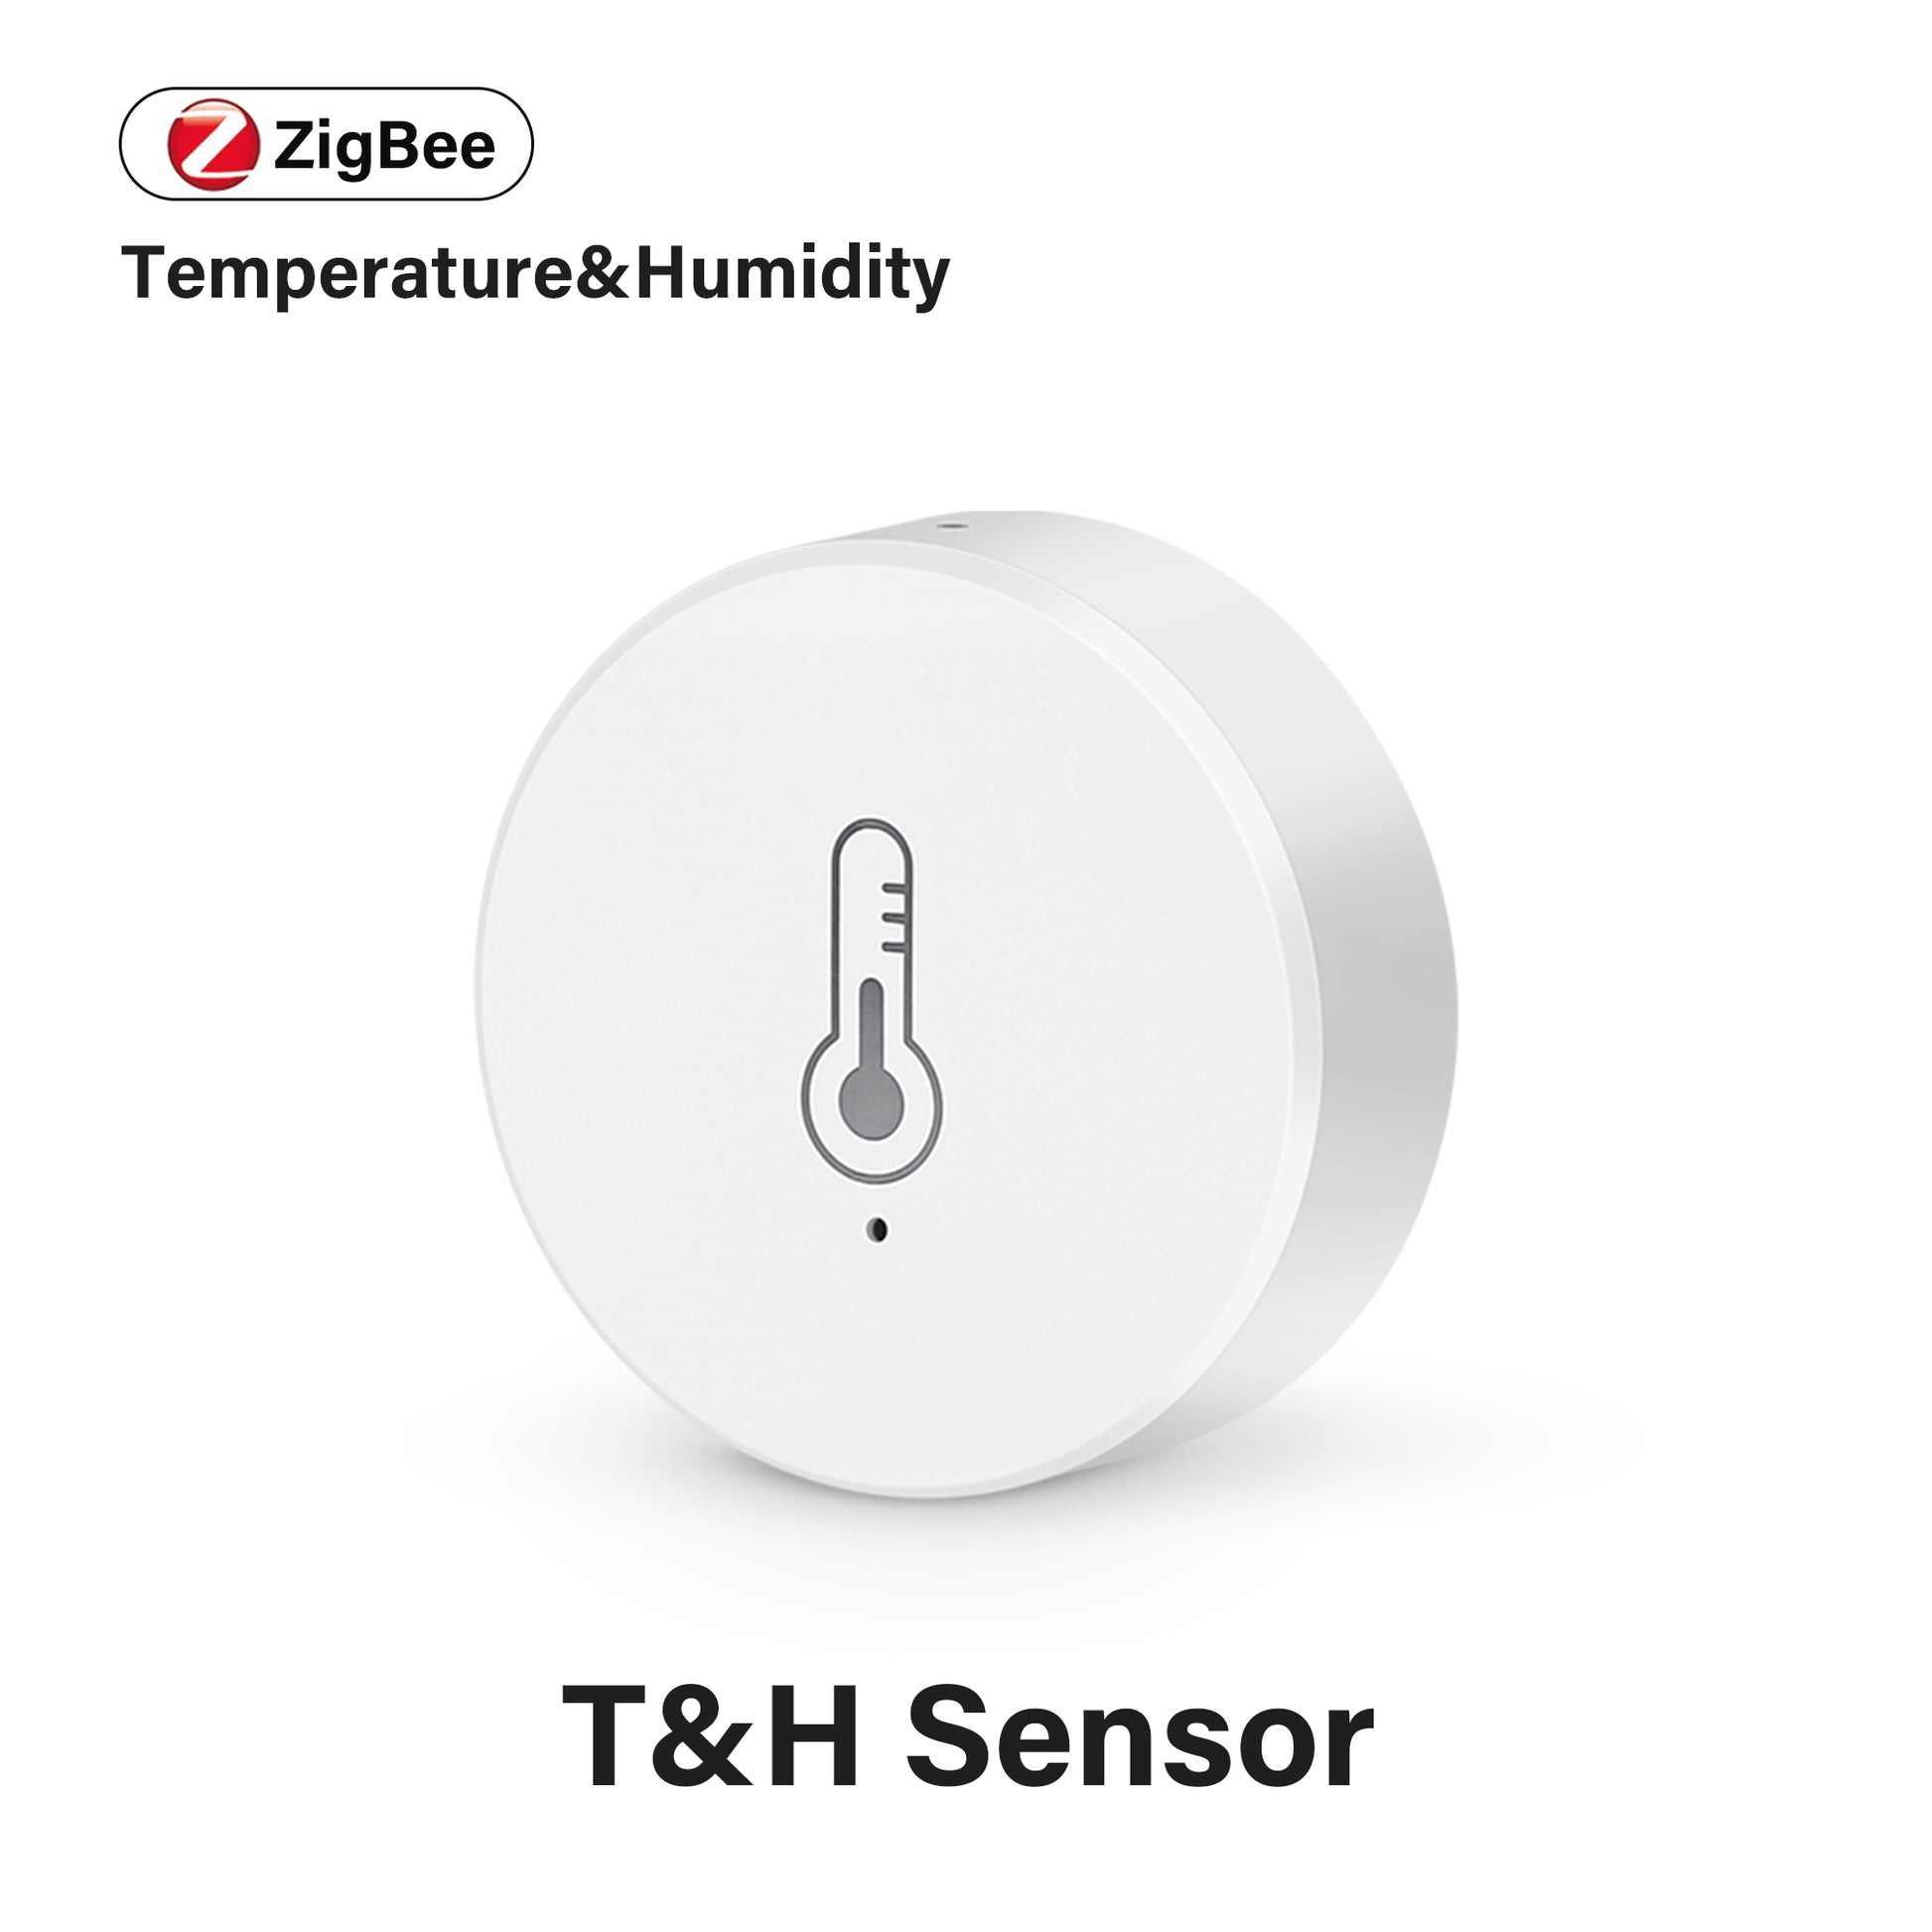 AUBESS Tuya Mini Zigbee Temperature &Humidity Sensor Work with  Alexa  and Google Home